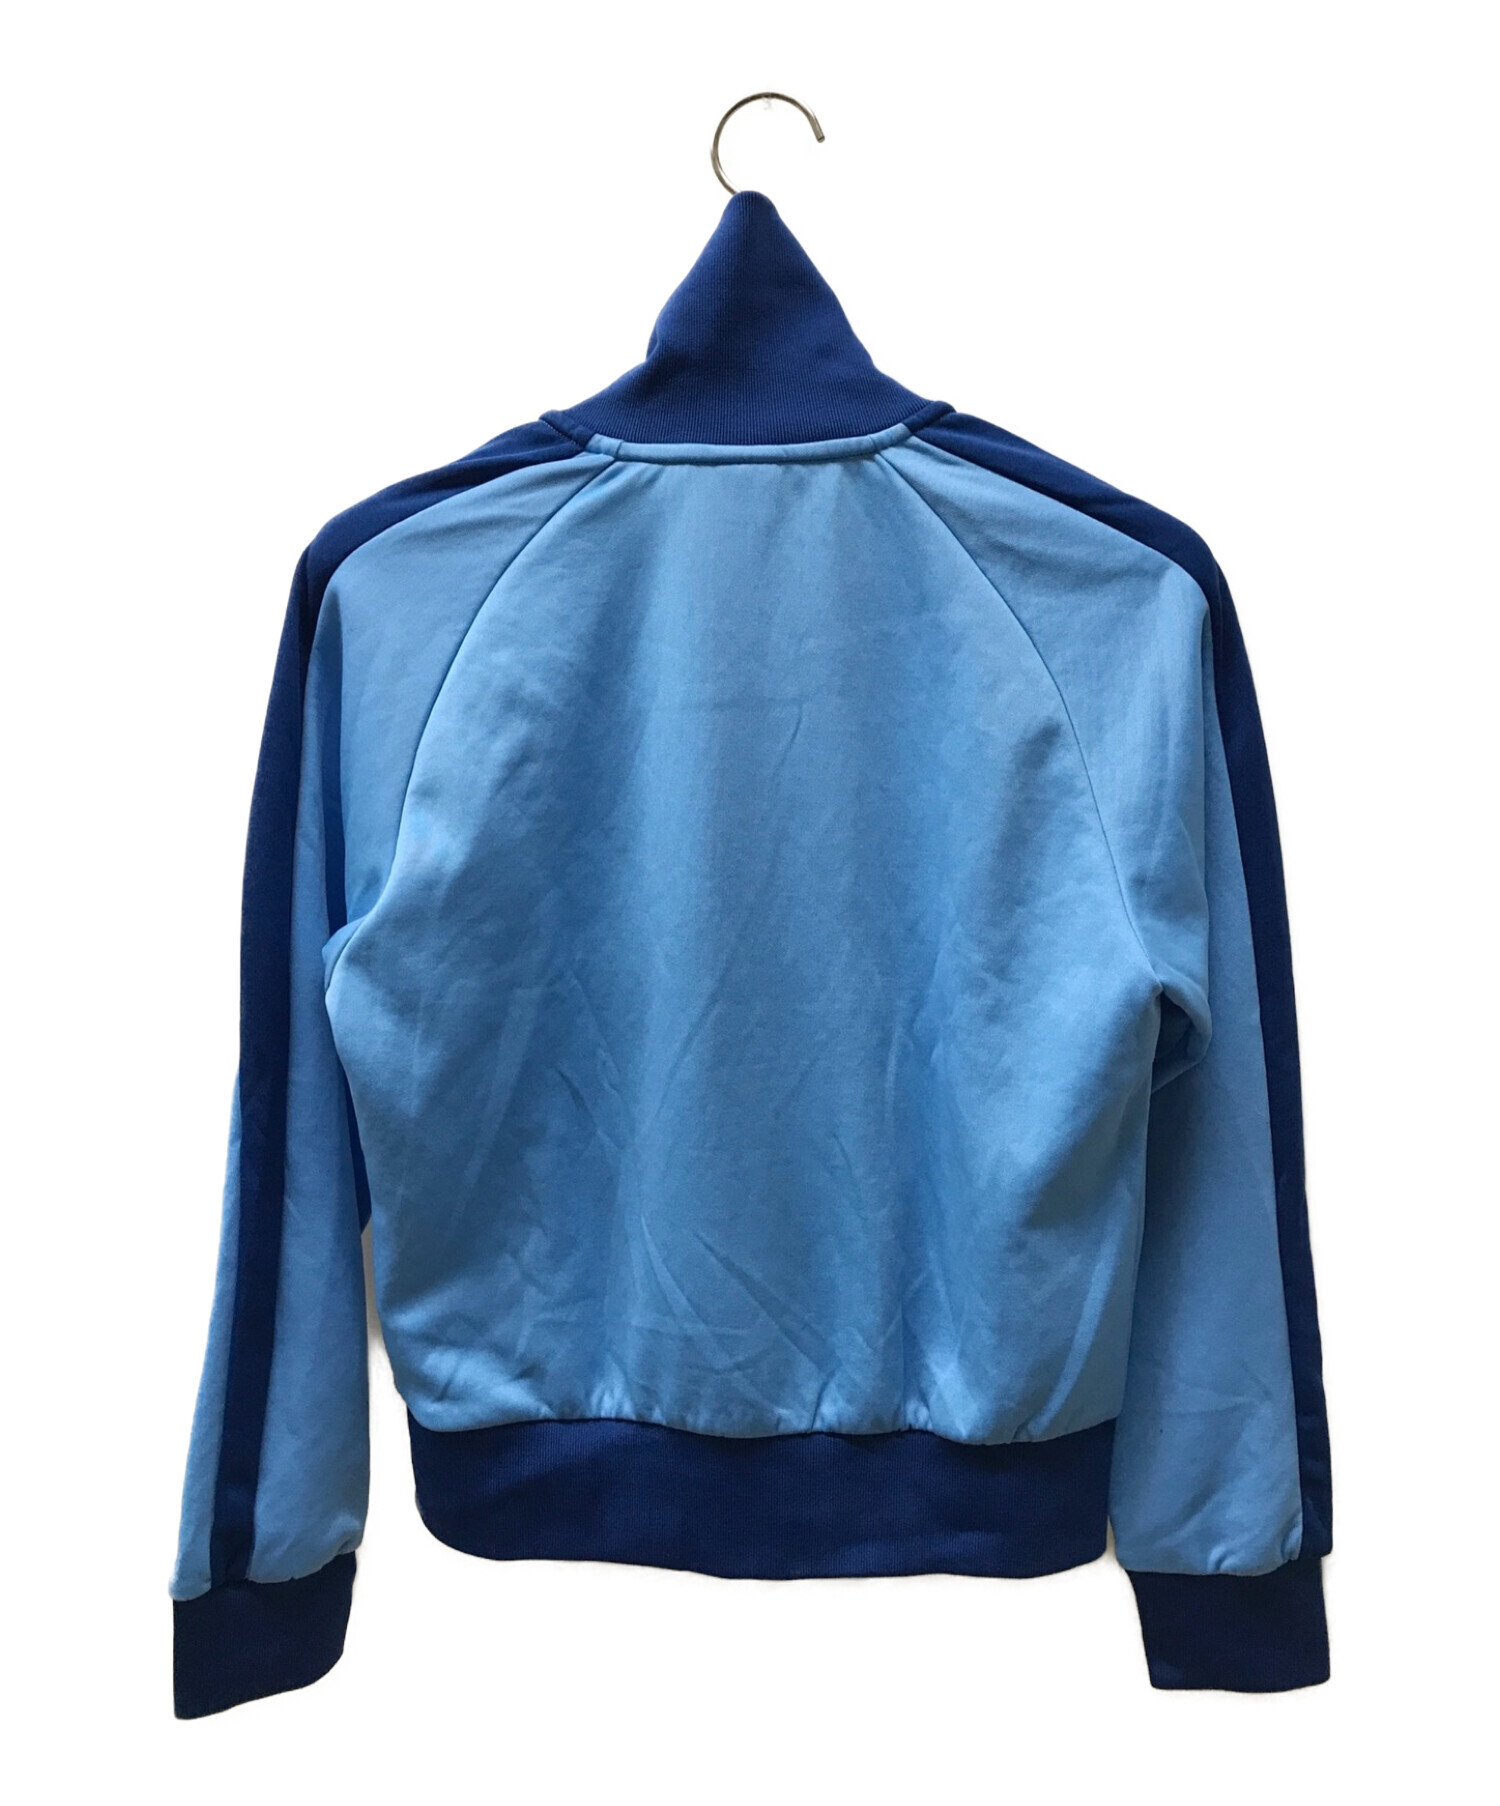 PUMA (プーマ) RAY BEAMS (レイ ビームス) T7トラックジャケット ブルー サイズ:S